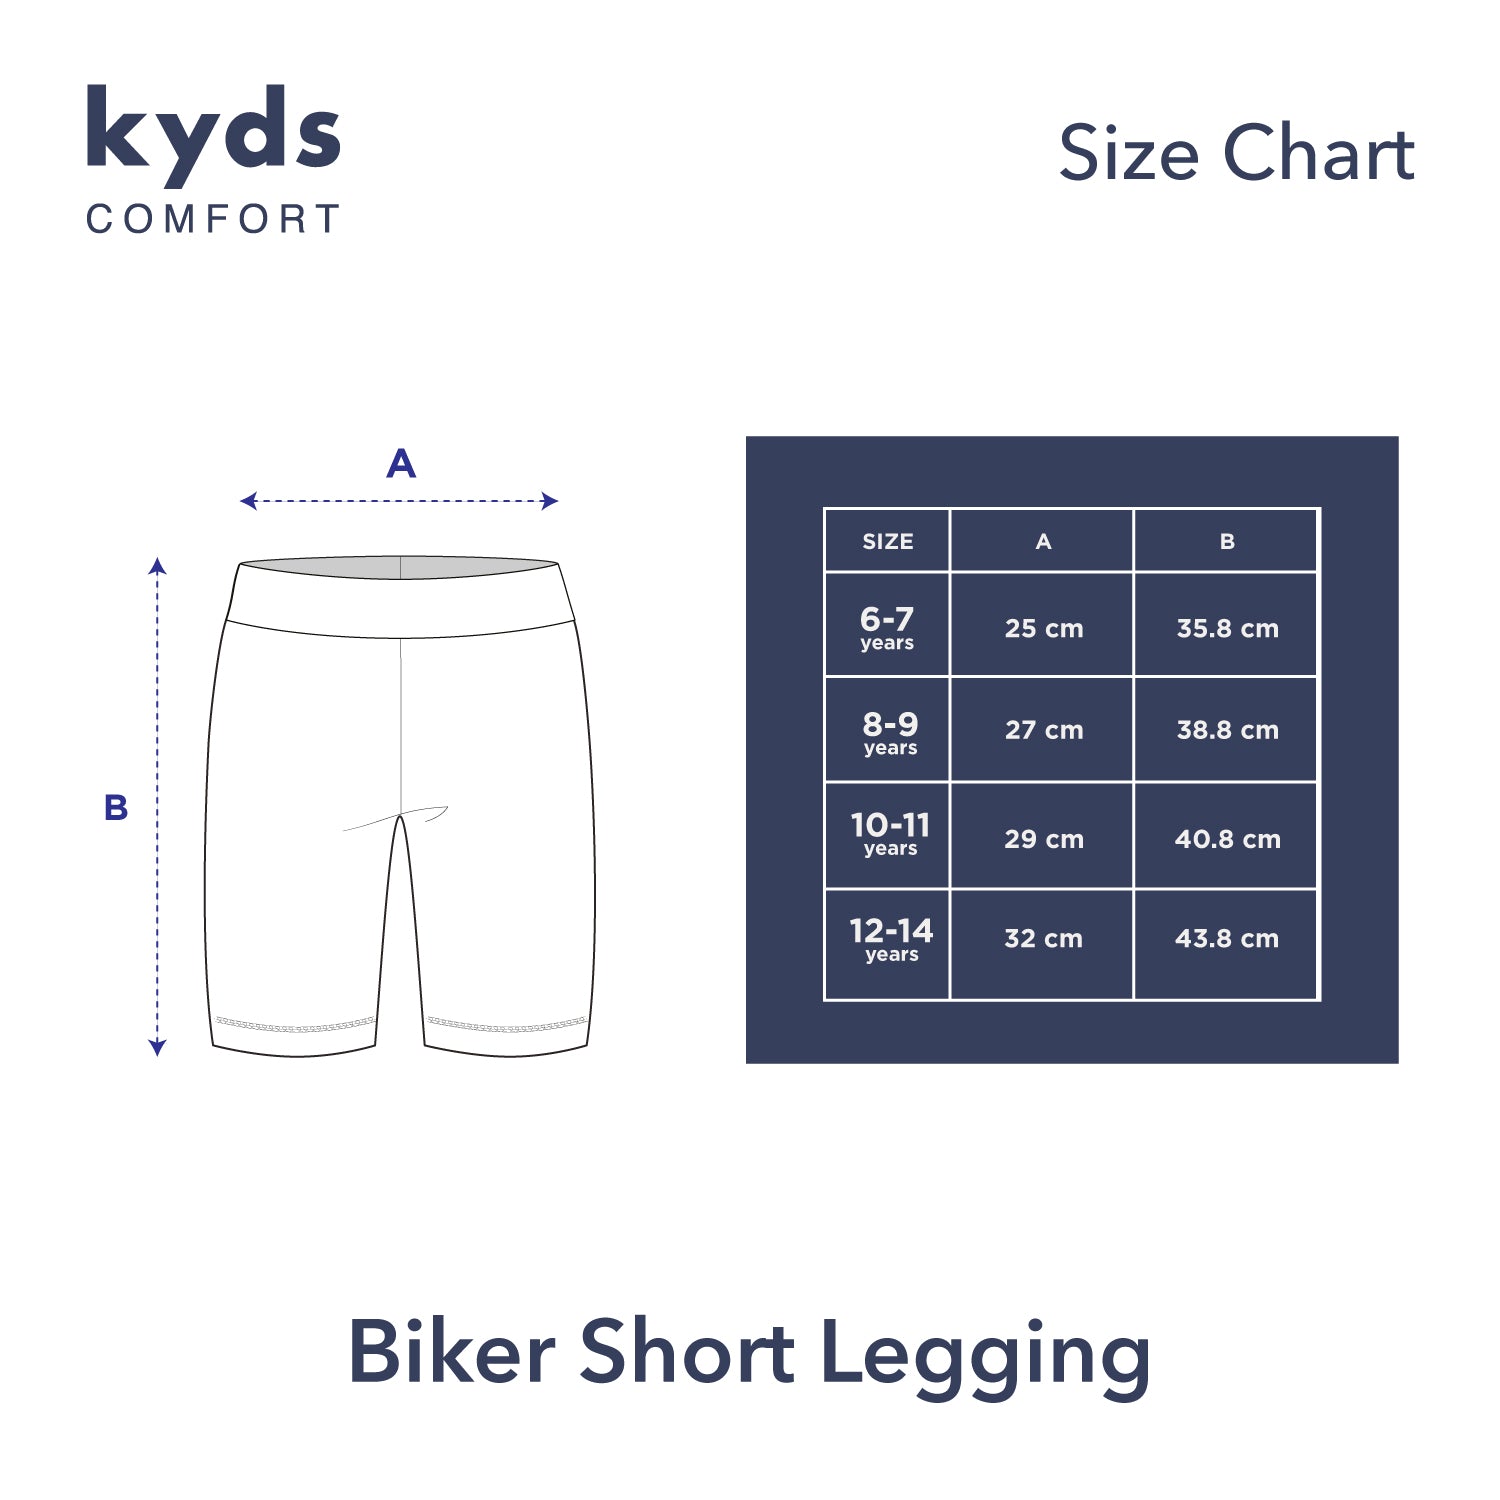 Biker Short Legging